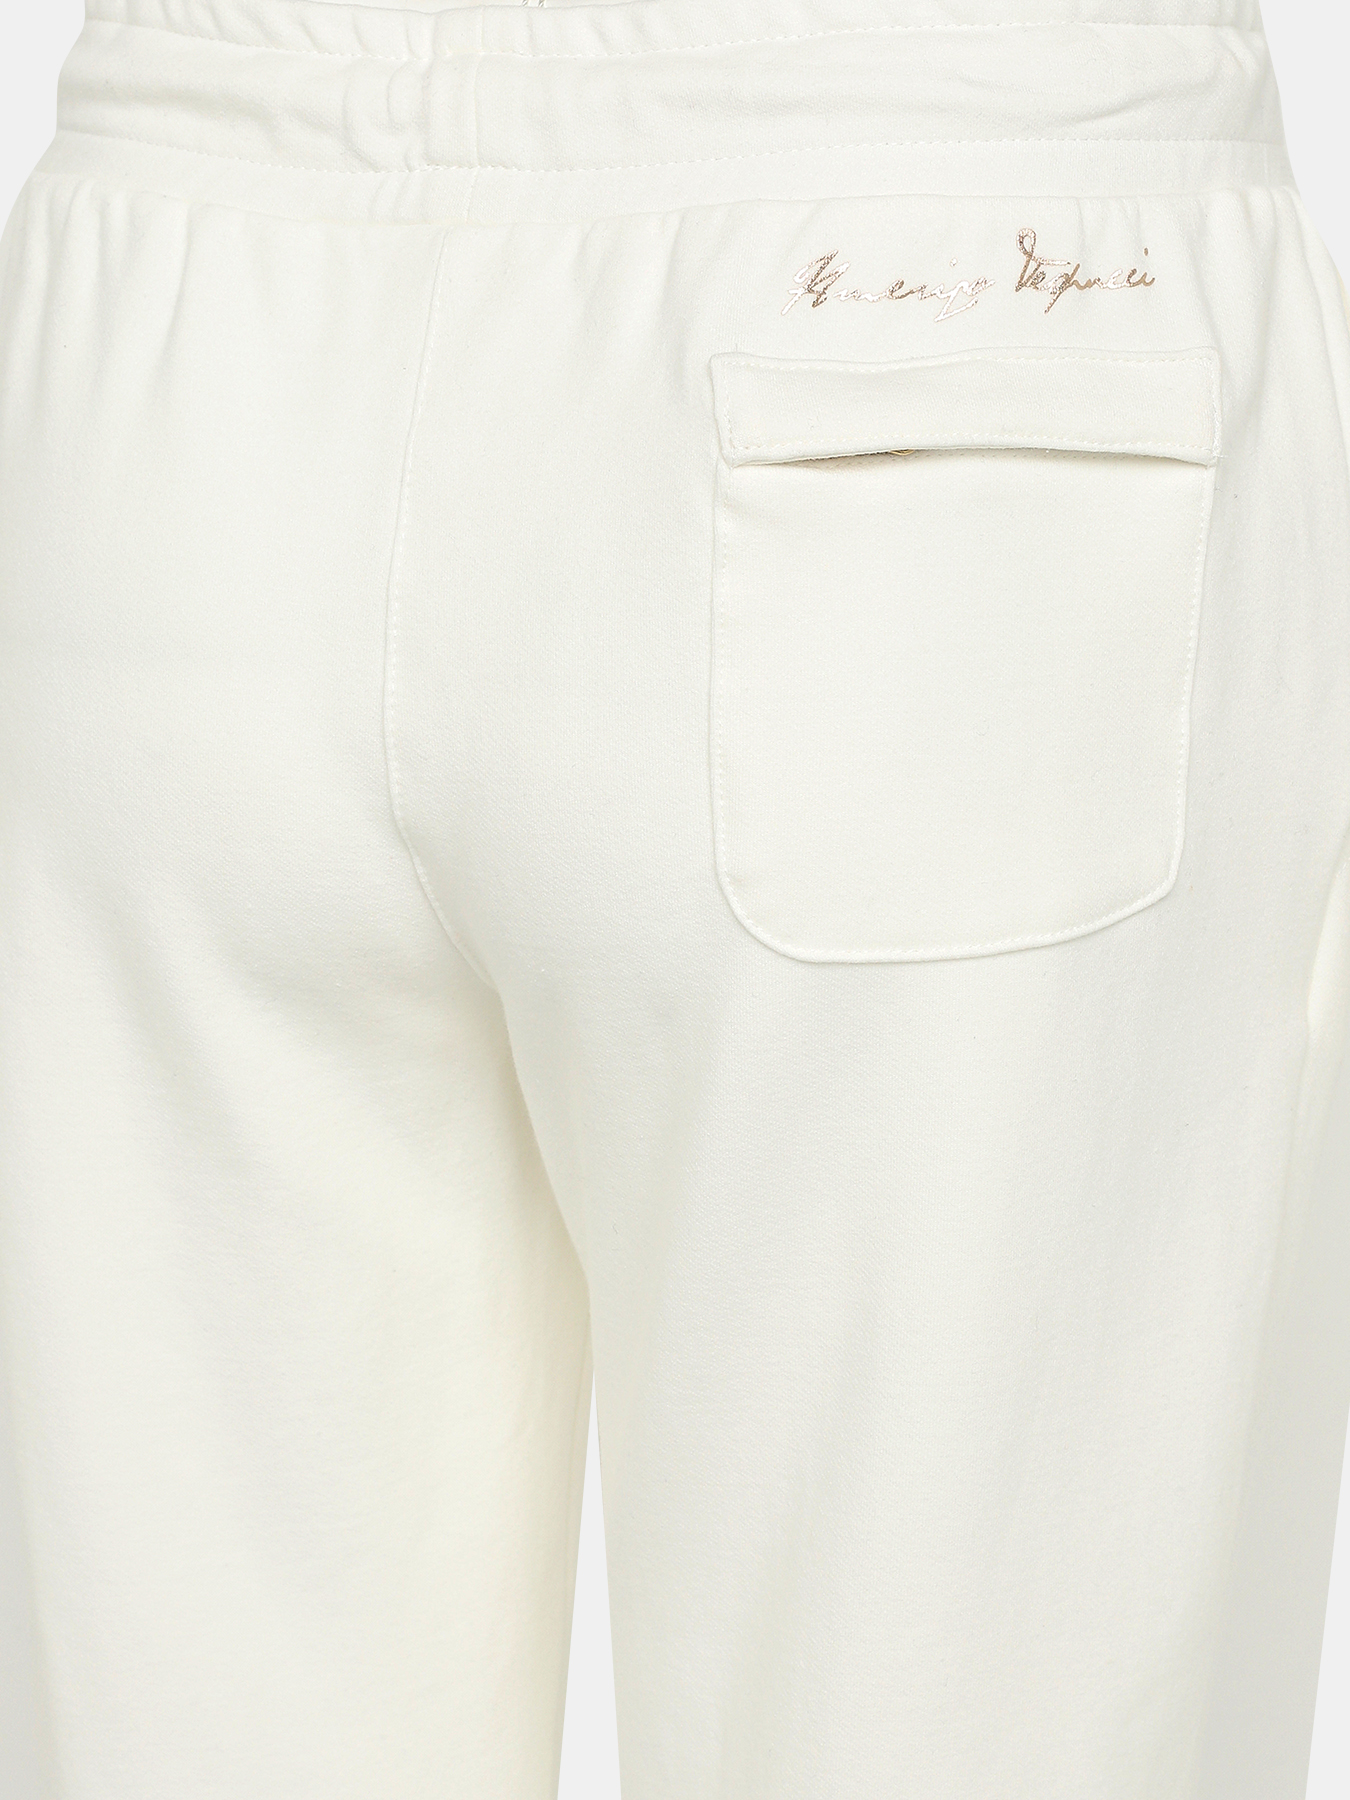 Спортивные брюки Marina Militare 412834-045, цвет белый, размер 48-50 - фото 4